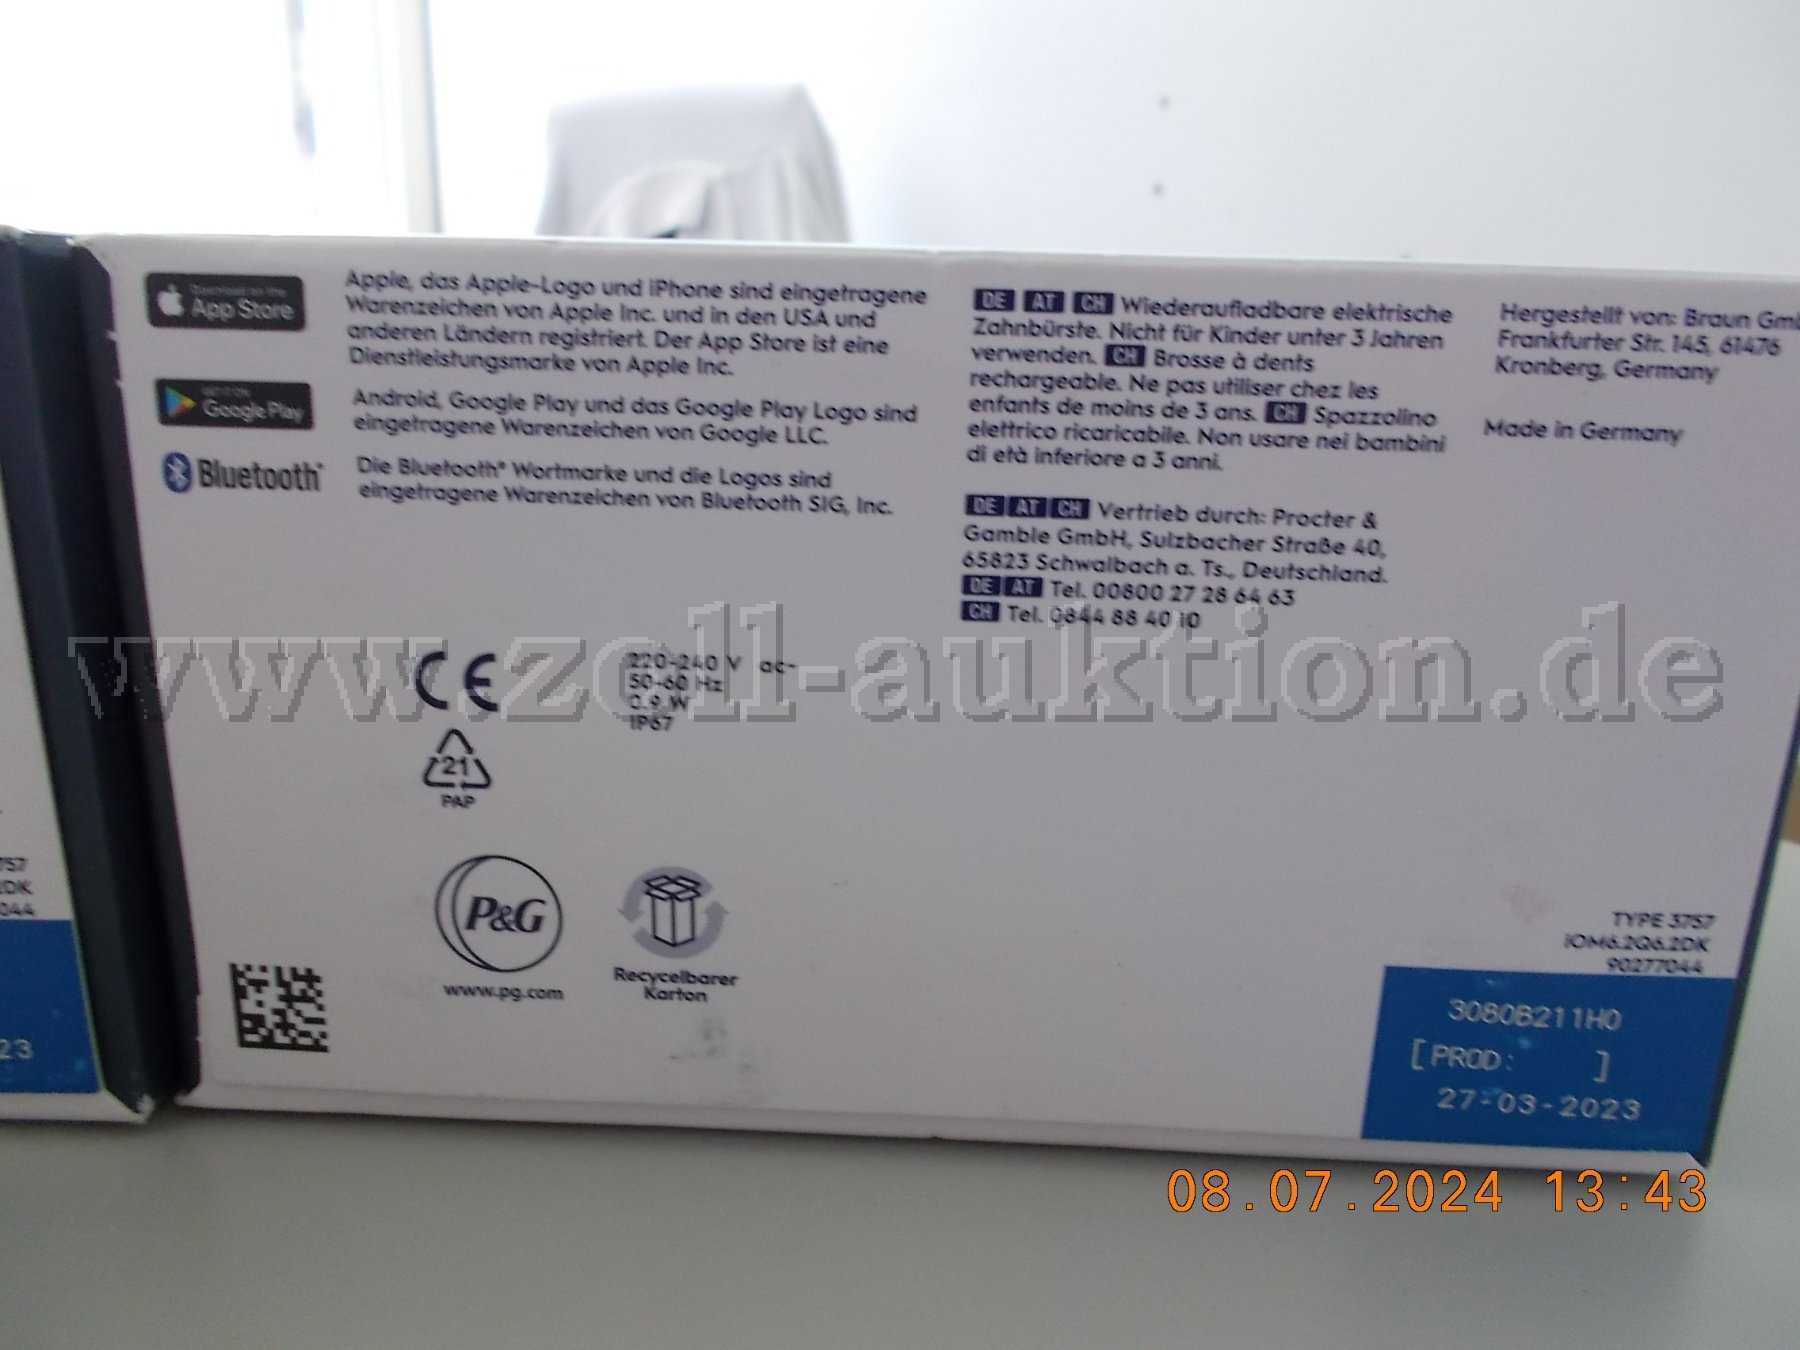 2x Oral-B iO Series 6N Elektrische Zahnbürste Lava Black